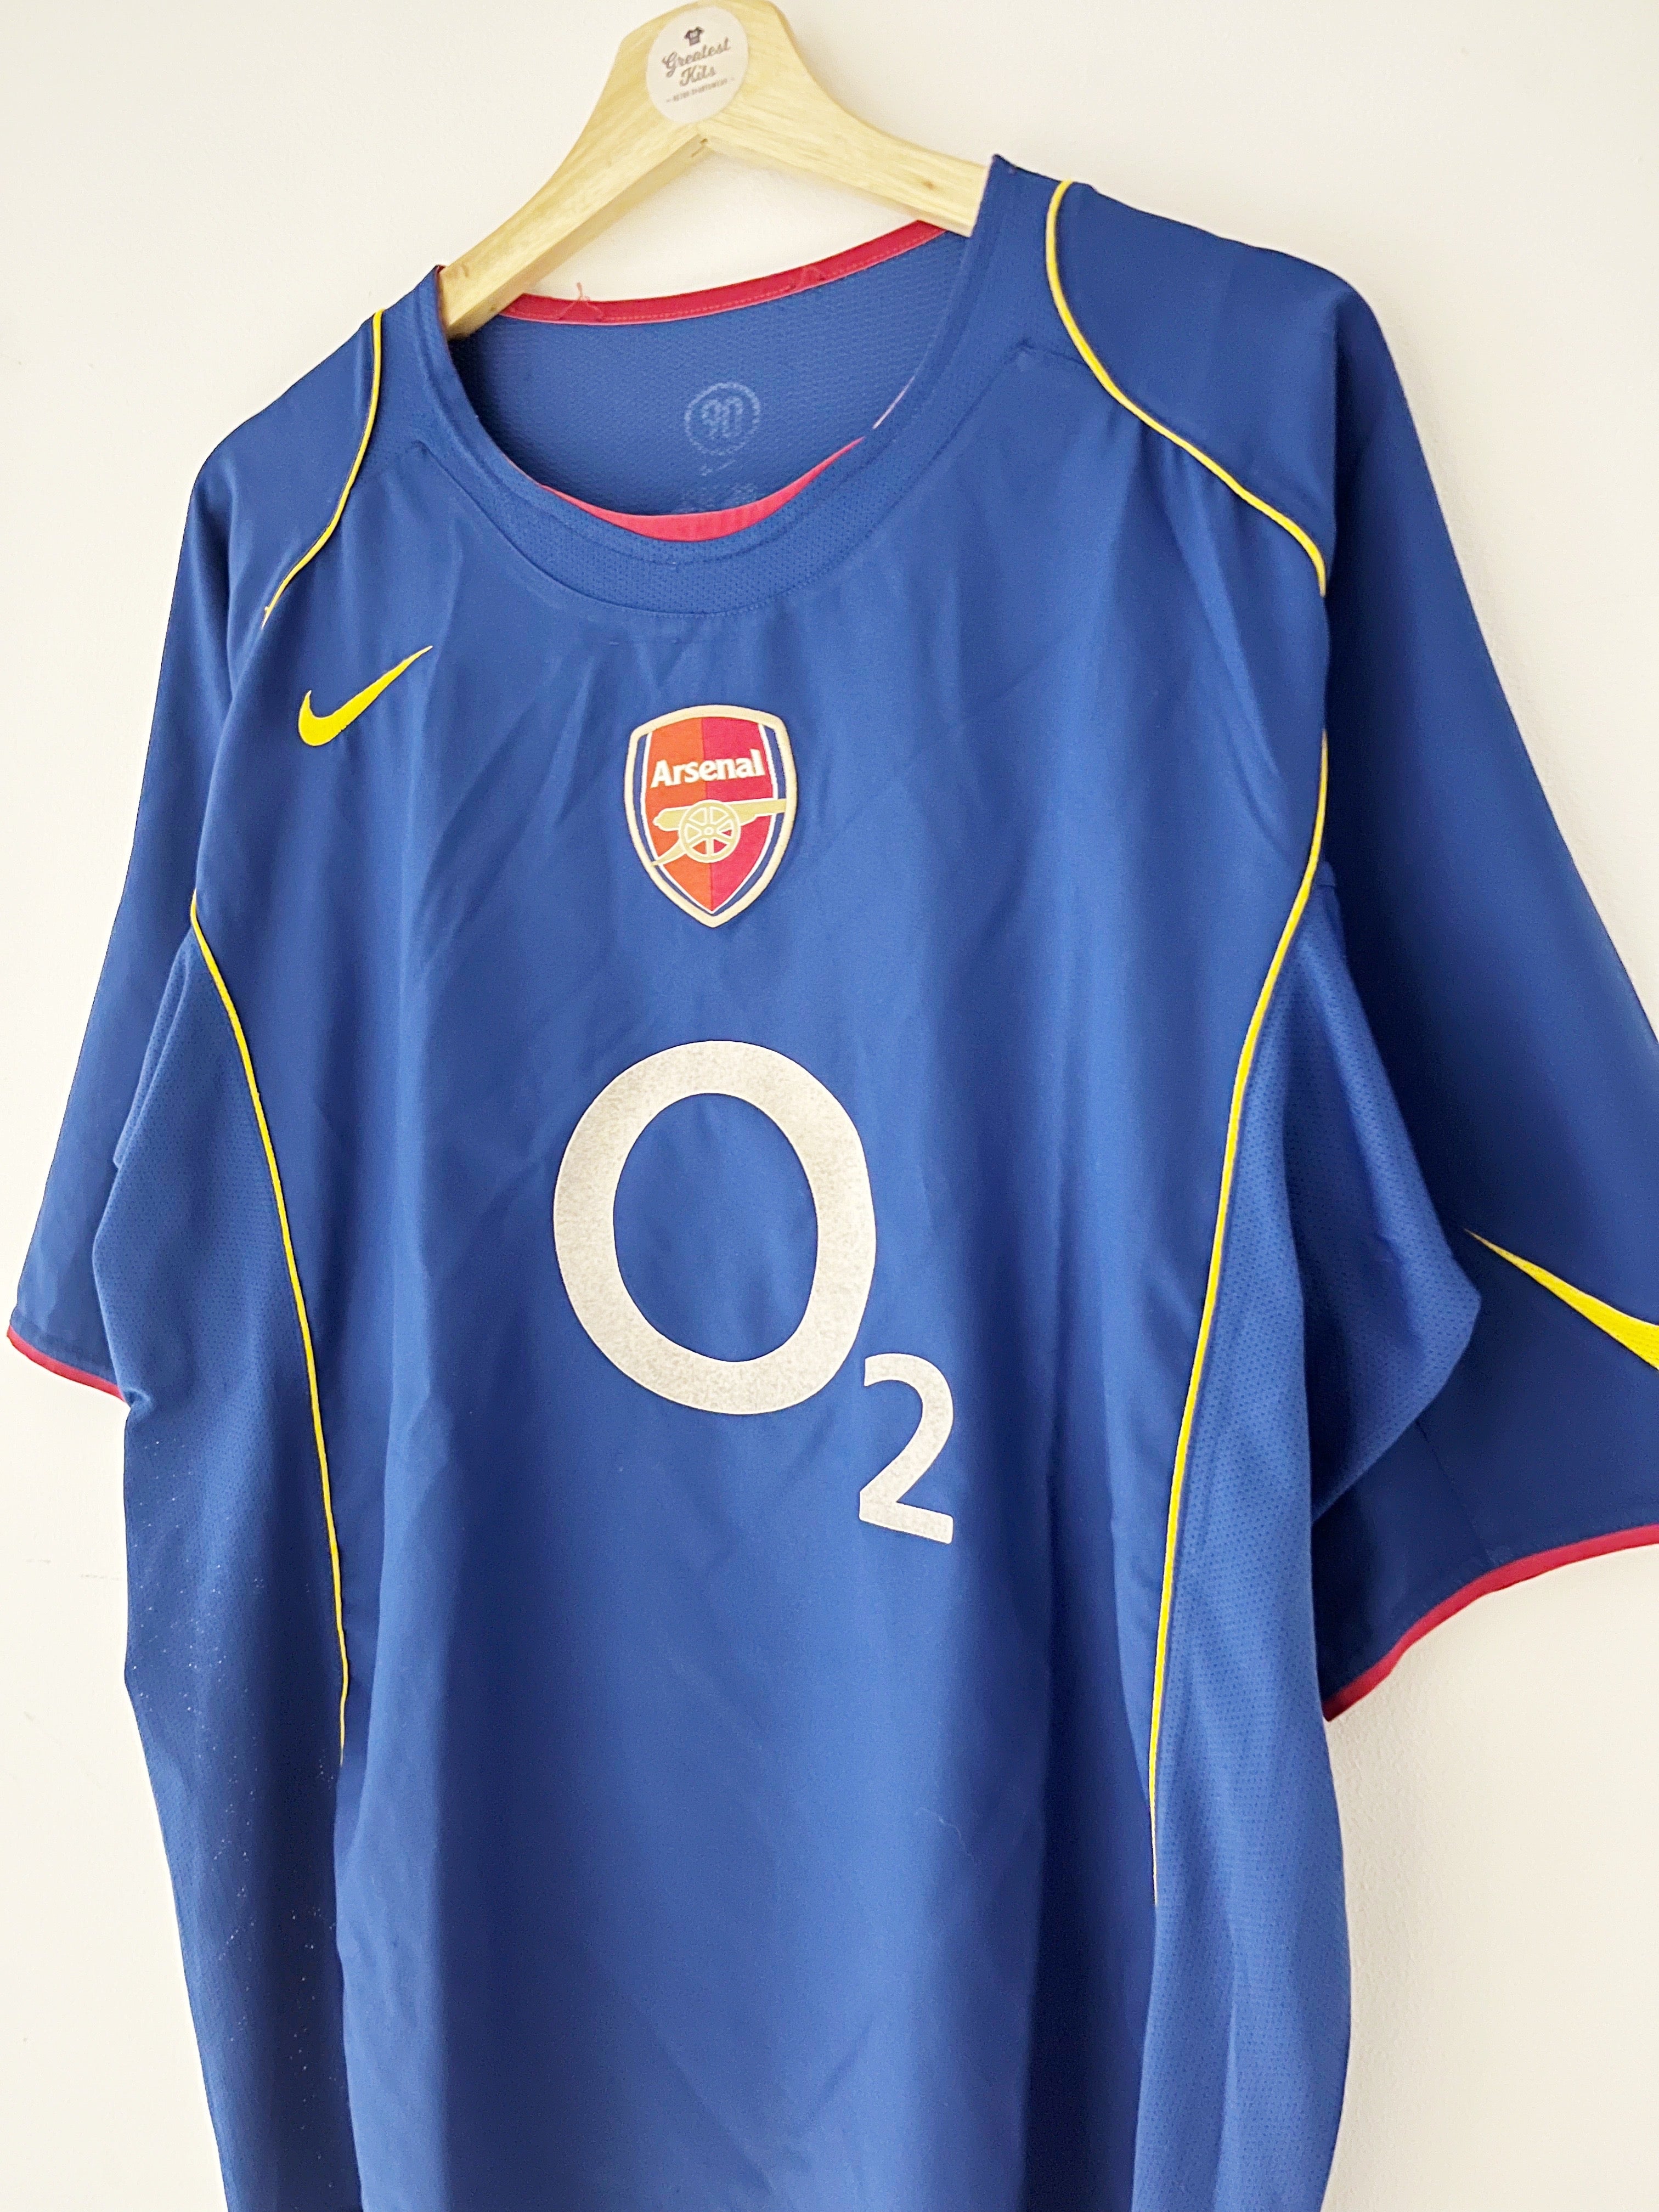 Arsenal de Sarandi Away football shirt 2004.